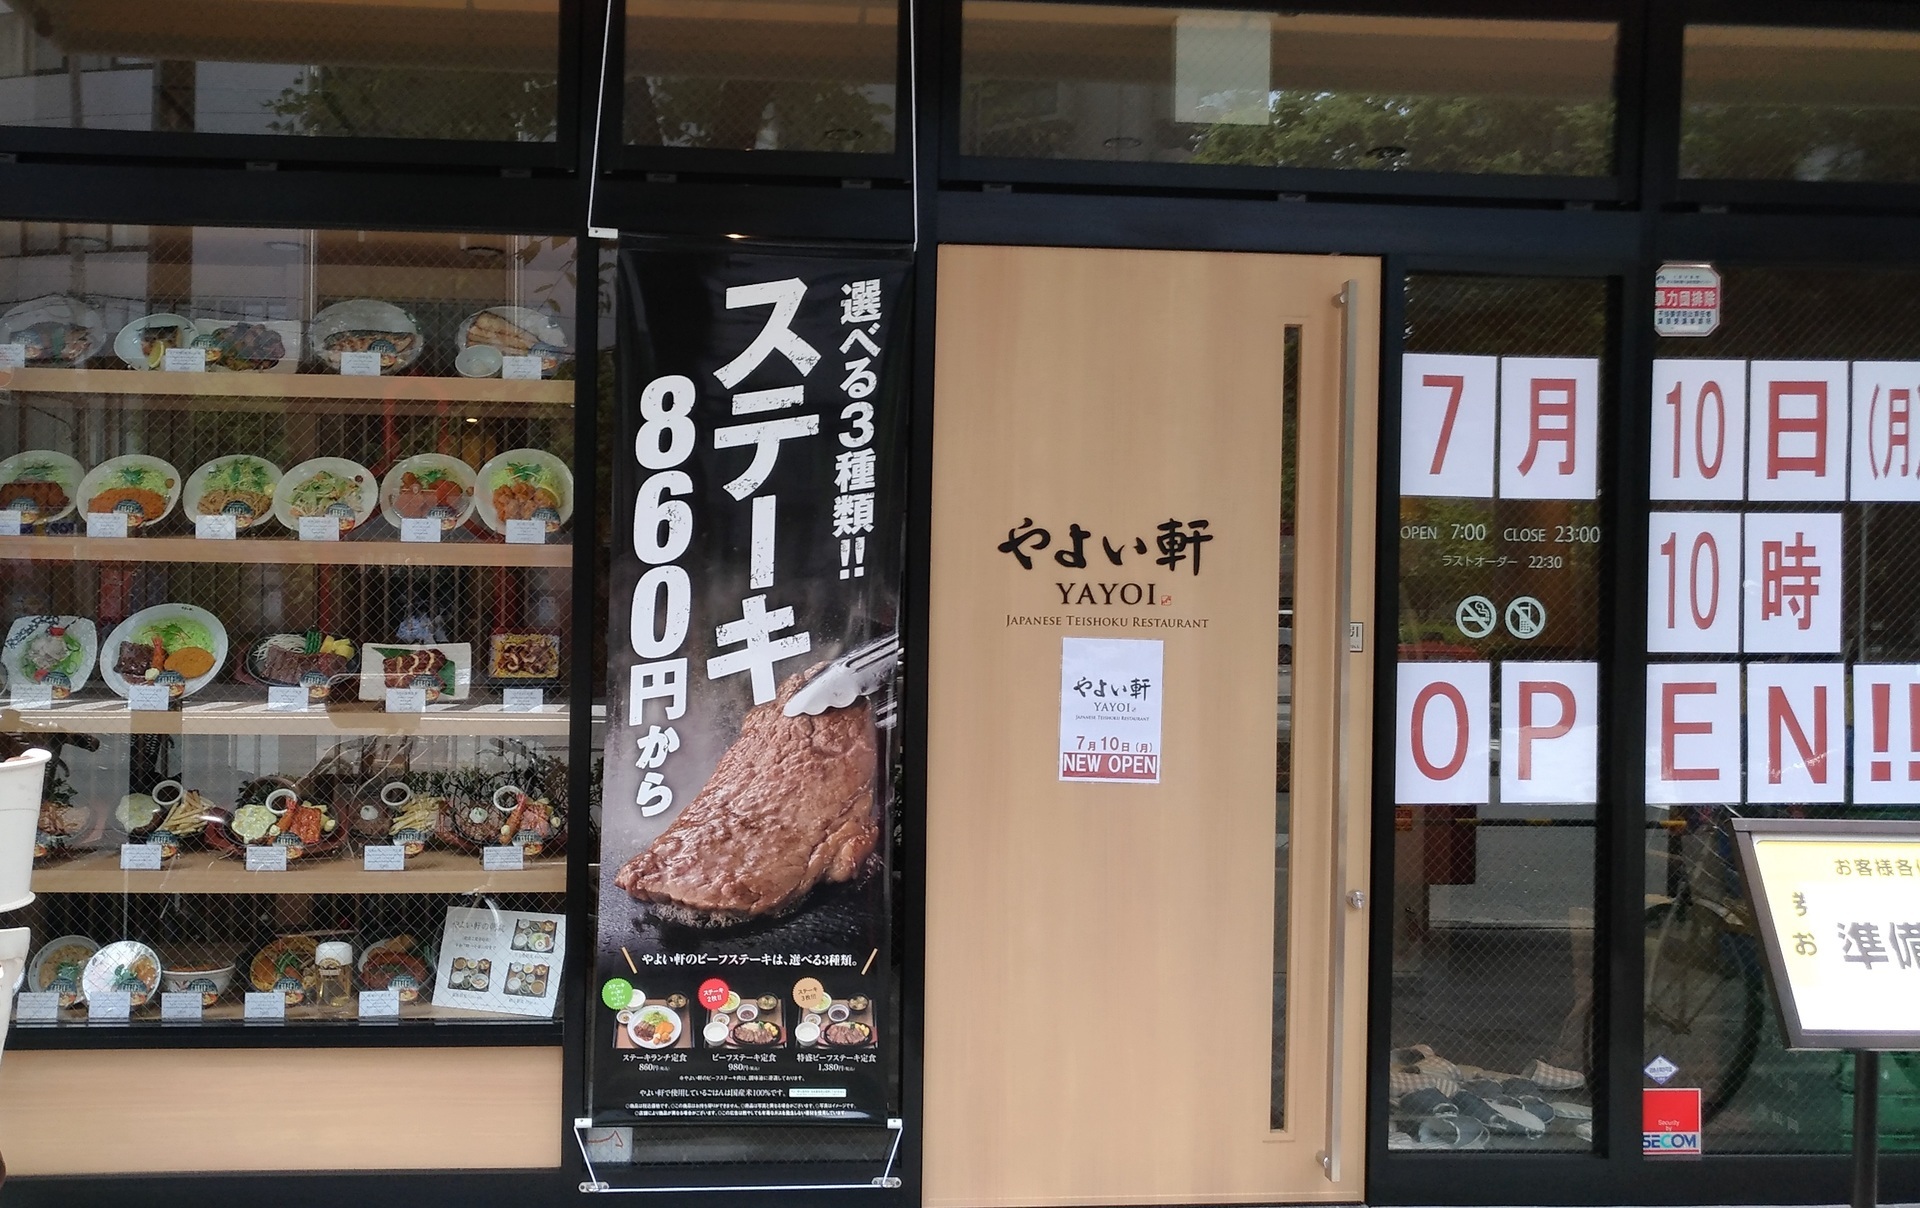 やよい軒中津店 17年7月10日 月 10時リニュアルオープン 大阪市北区中津 賃貸マンションで一人暮らし始めてみました